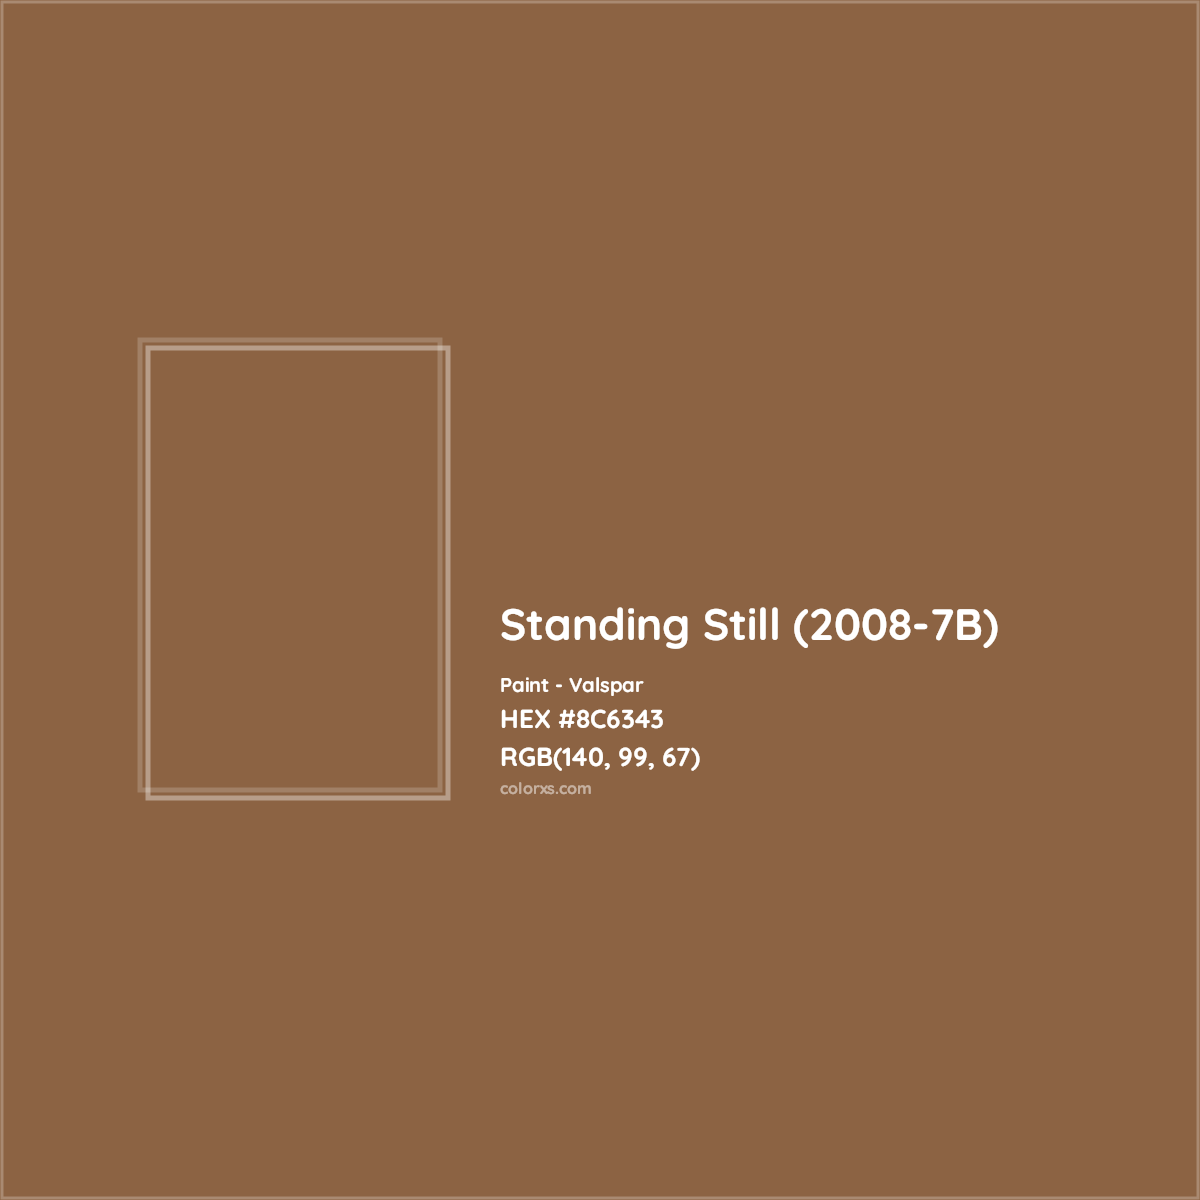 HEX #8C6343 Standing Still (2008-7B) Paint Valspar - Color Code